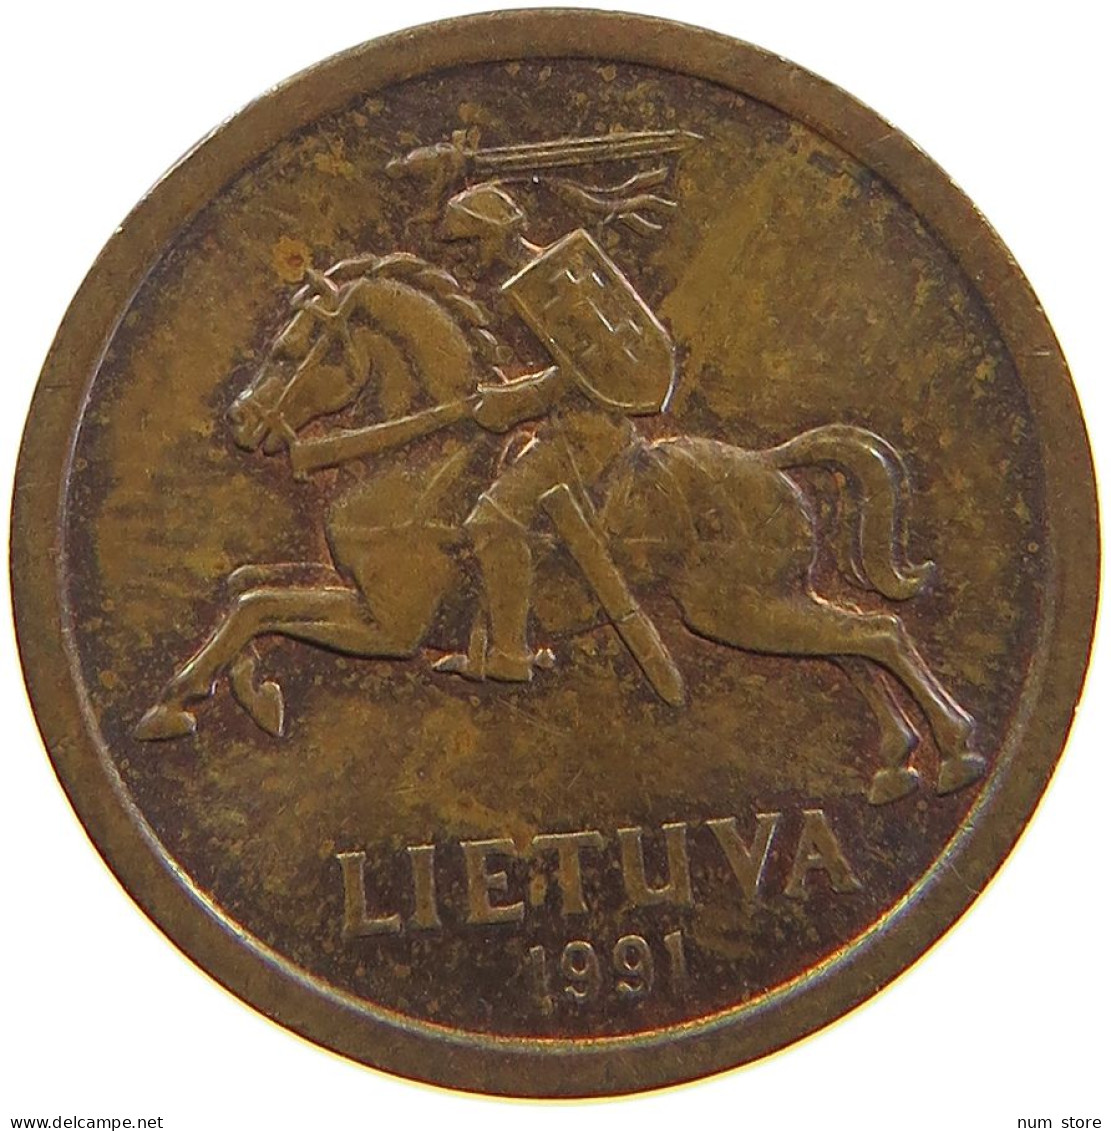 LITHUANIA 10 CENTU 1991 #s105 0615 - Lithuania